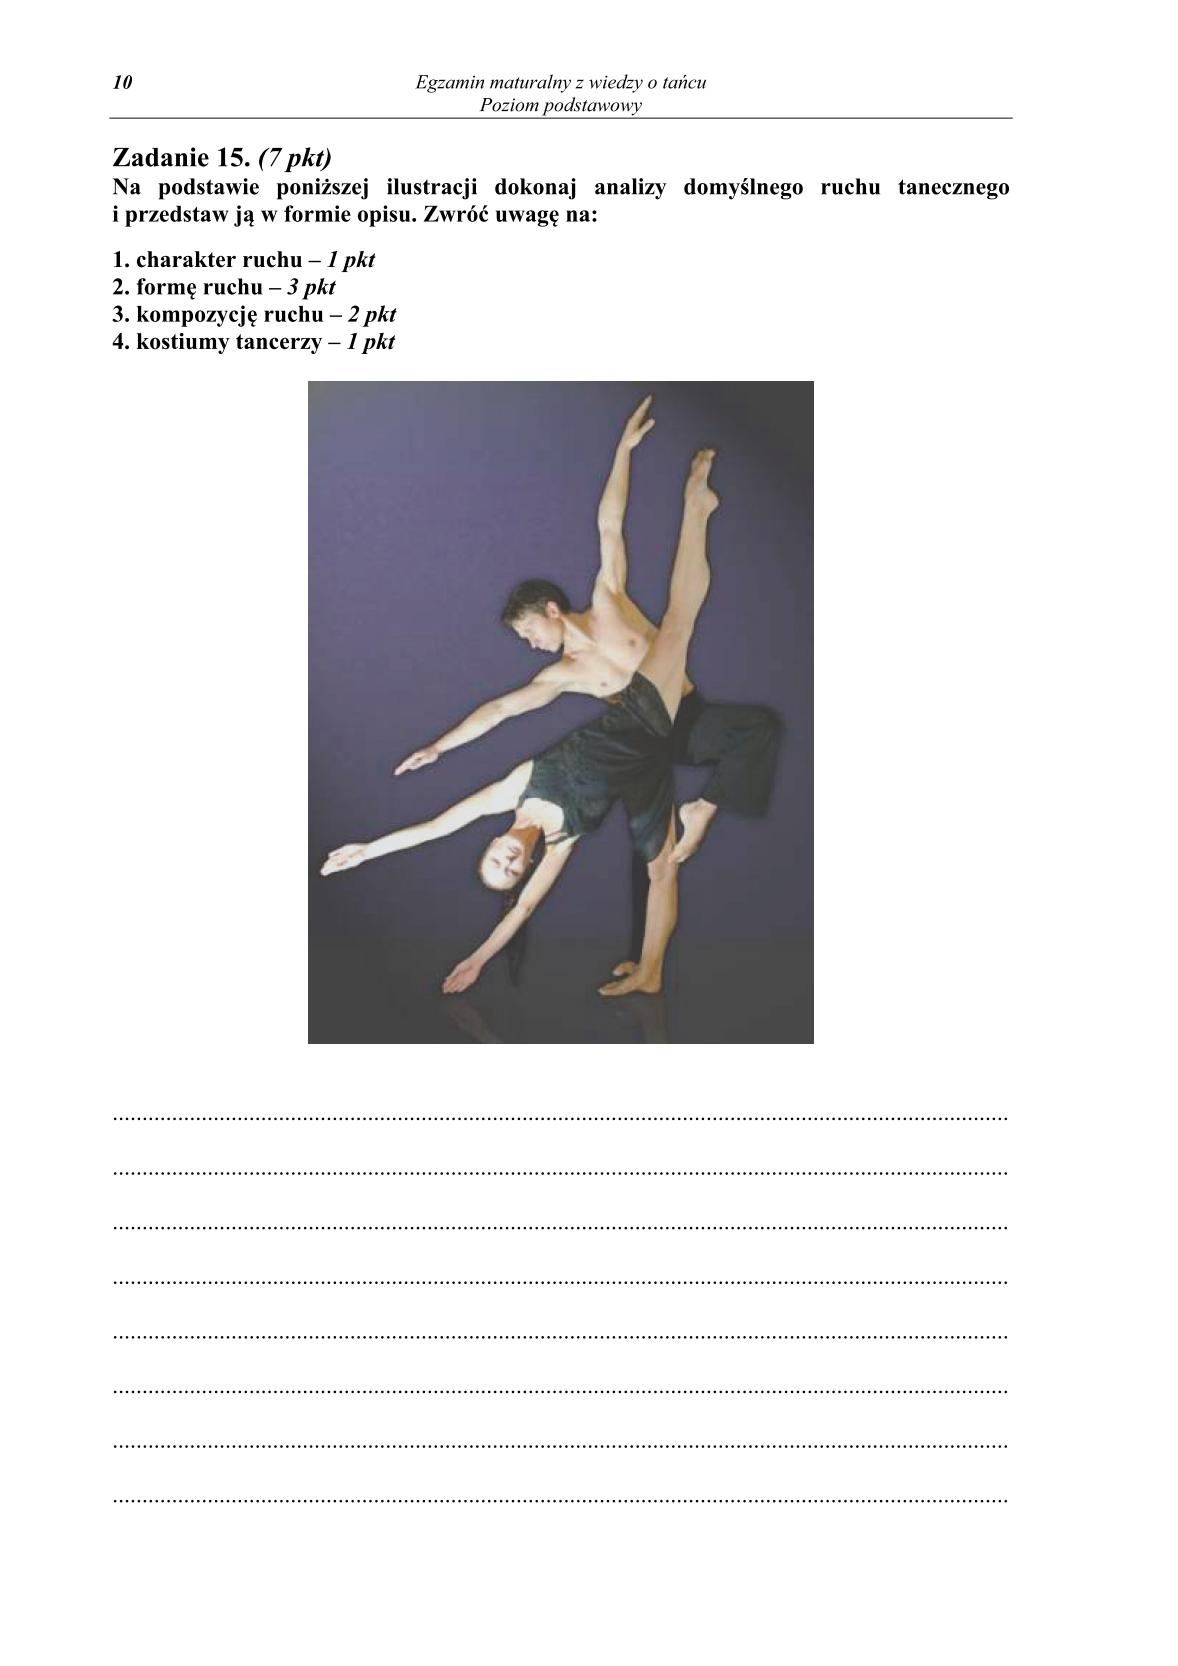 pytania-wiedza-o-tancu-poziom-podstawowy-matura-2014-str.10